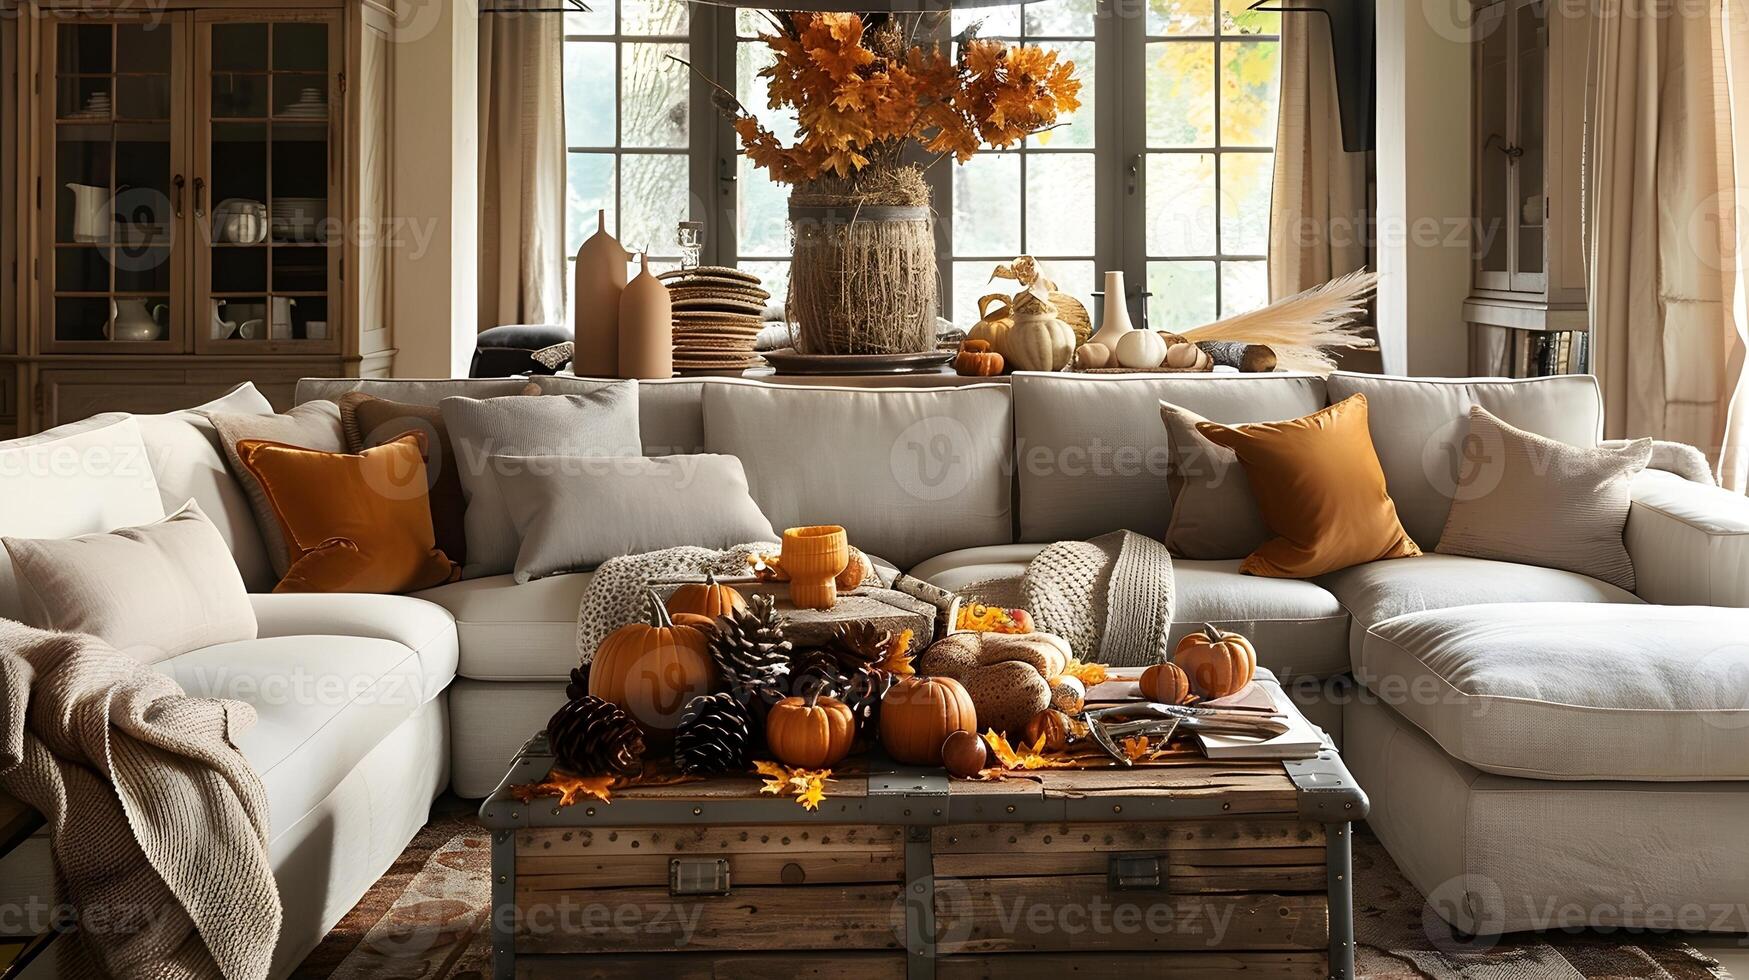 l'automne vivant pièce décor gris canapés orné avec chaud Orange oreillers et rustique en bois tronc café table orné avec tomber feuillage photo